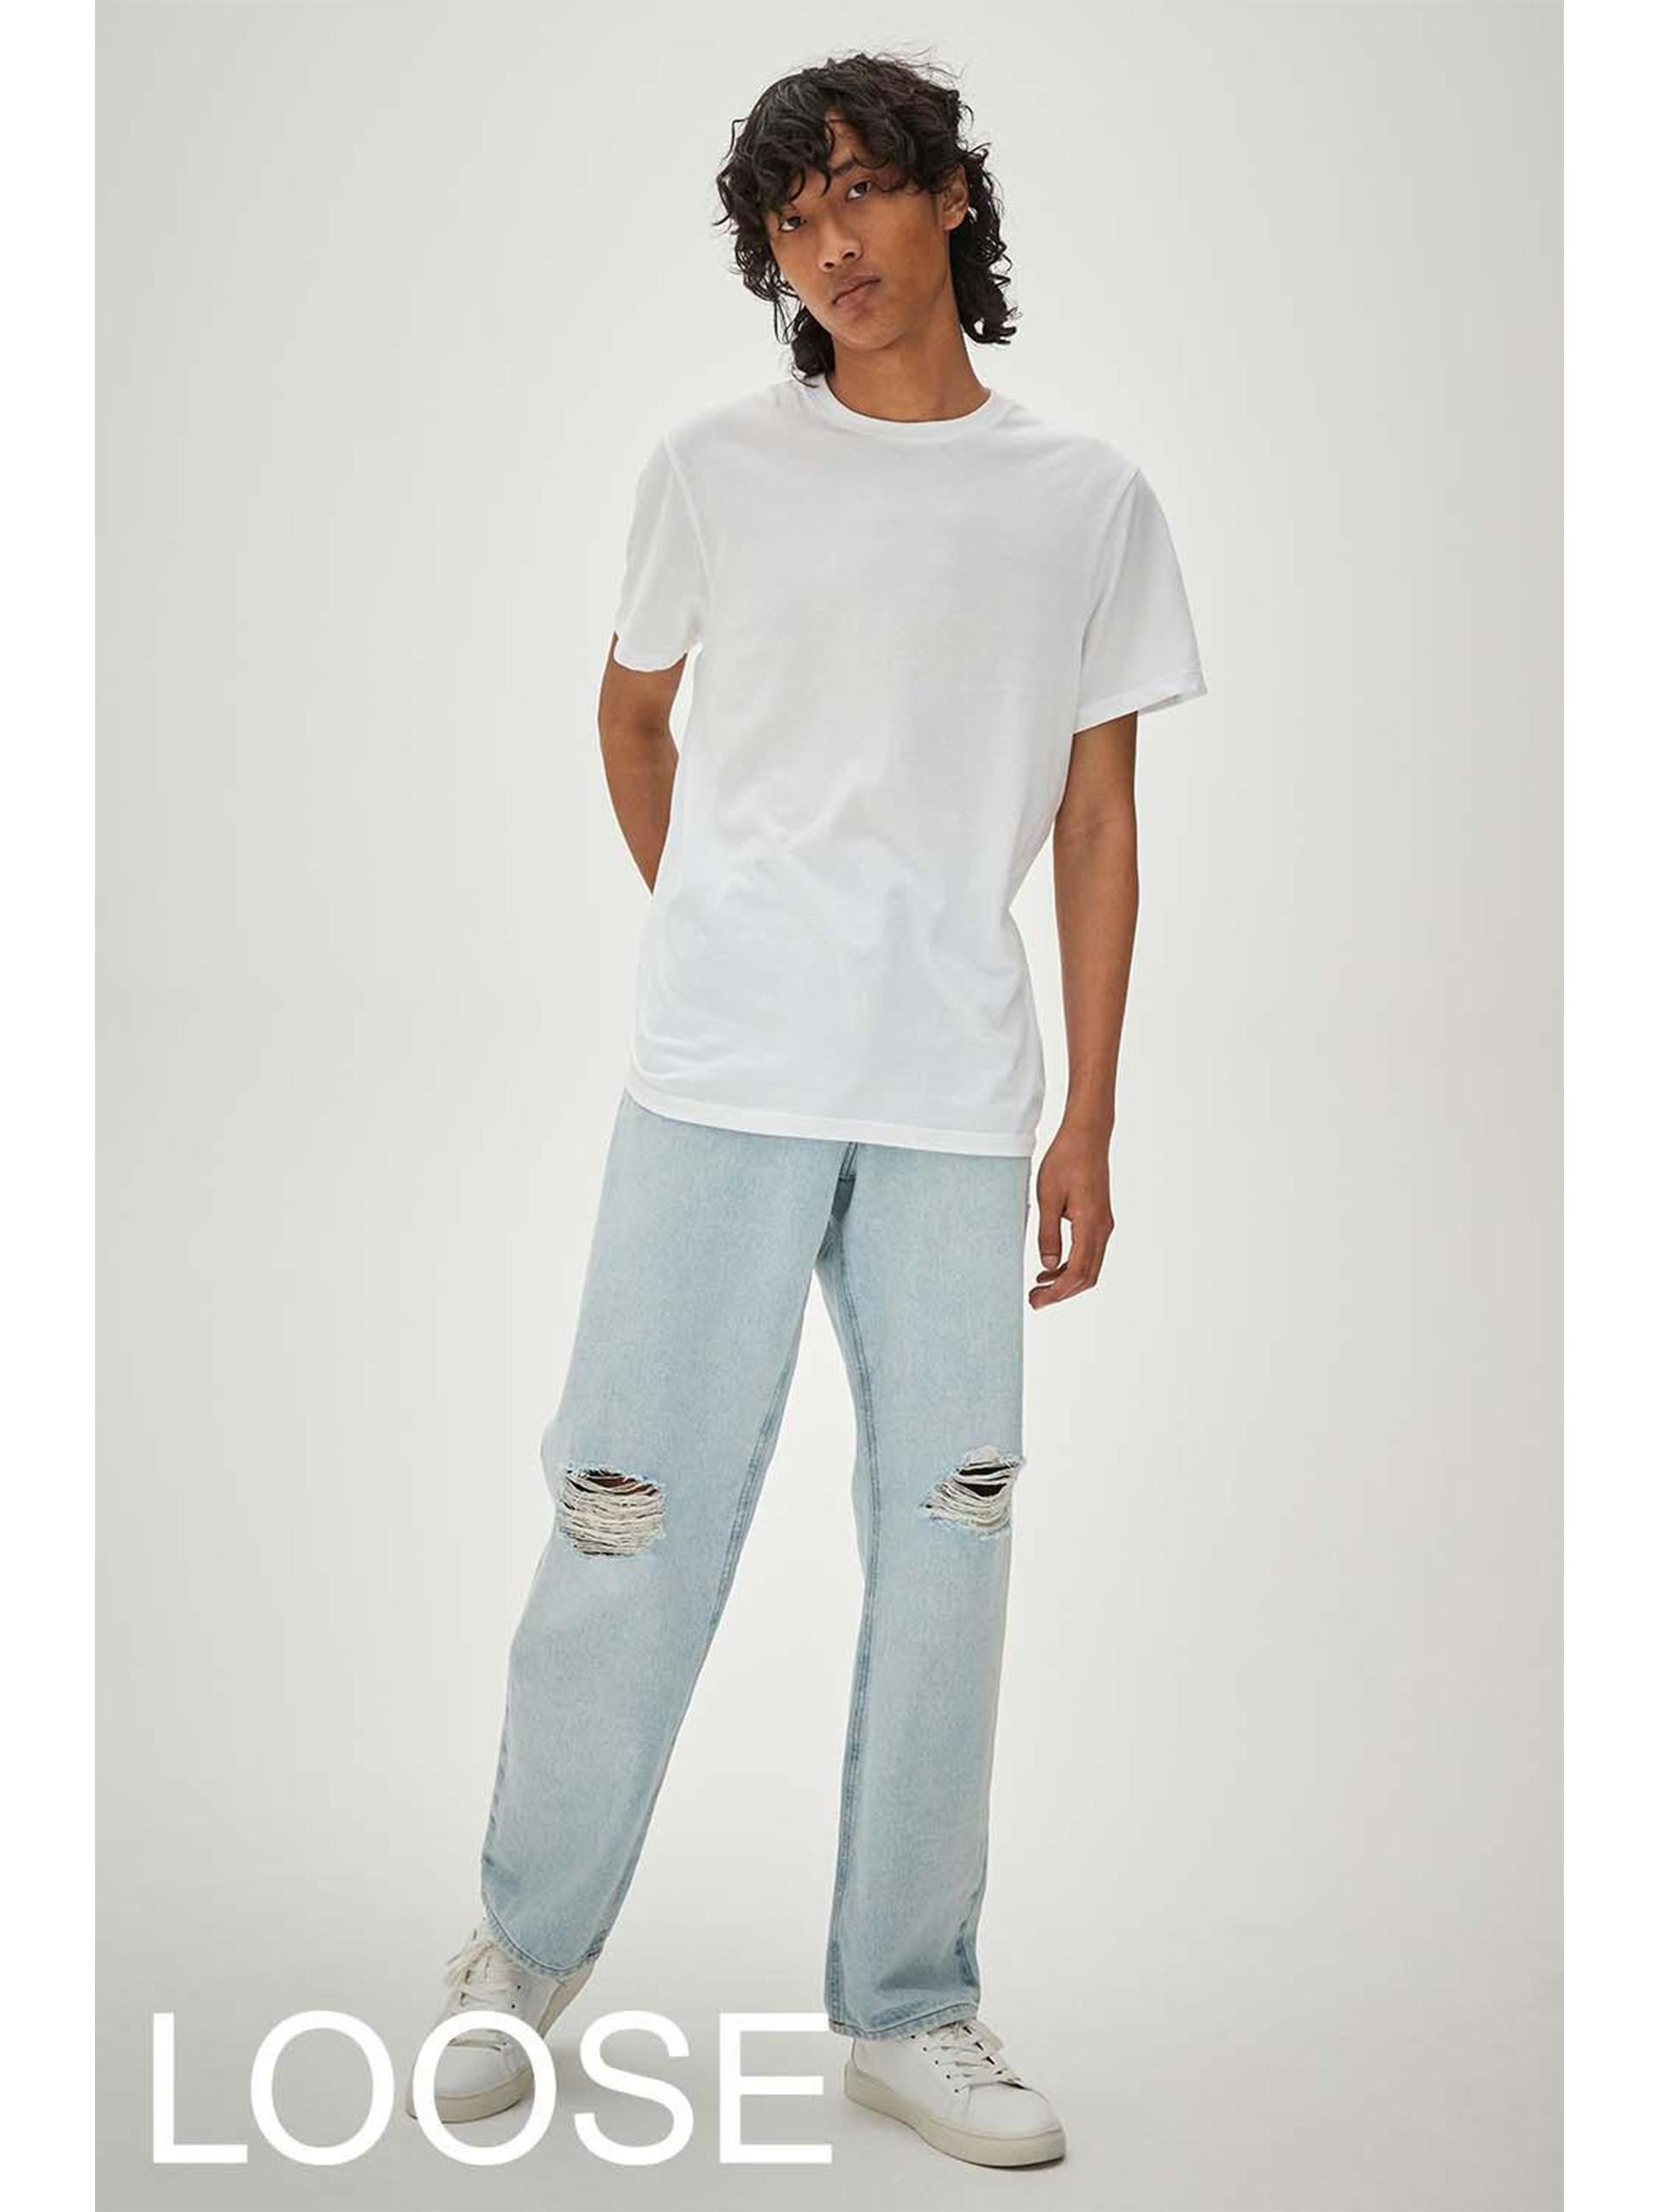 Model wears light blue loose ripped jeans